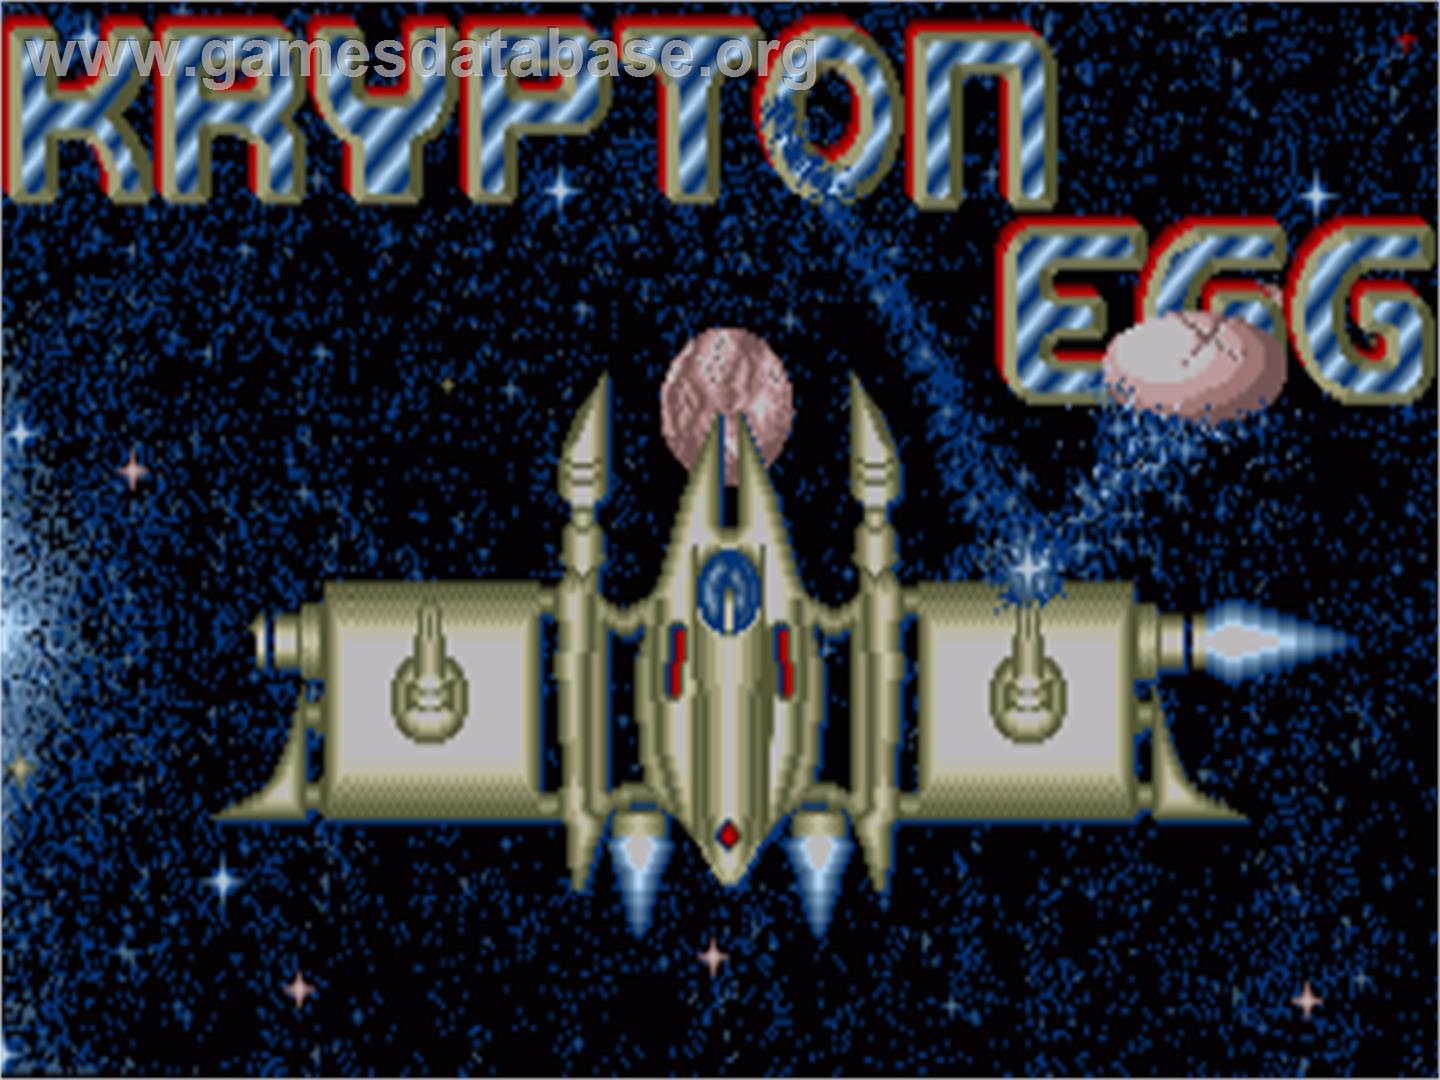 Krypton Egg - Commodore Amiga - Artwork - Title Screen